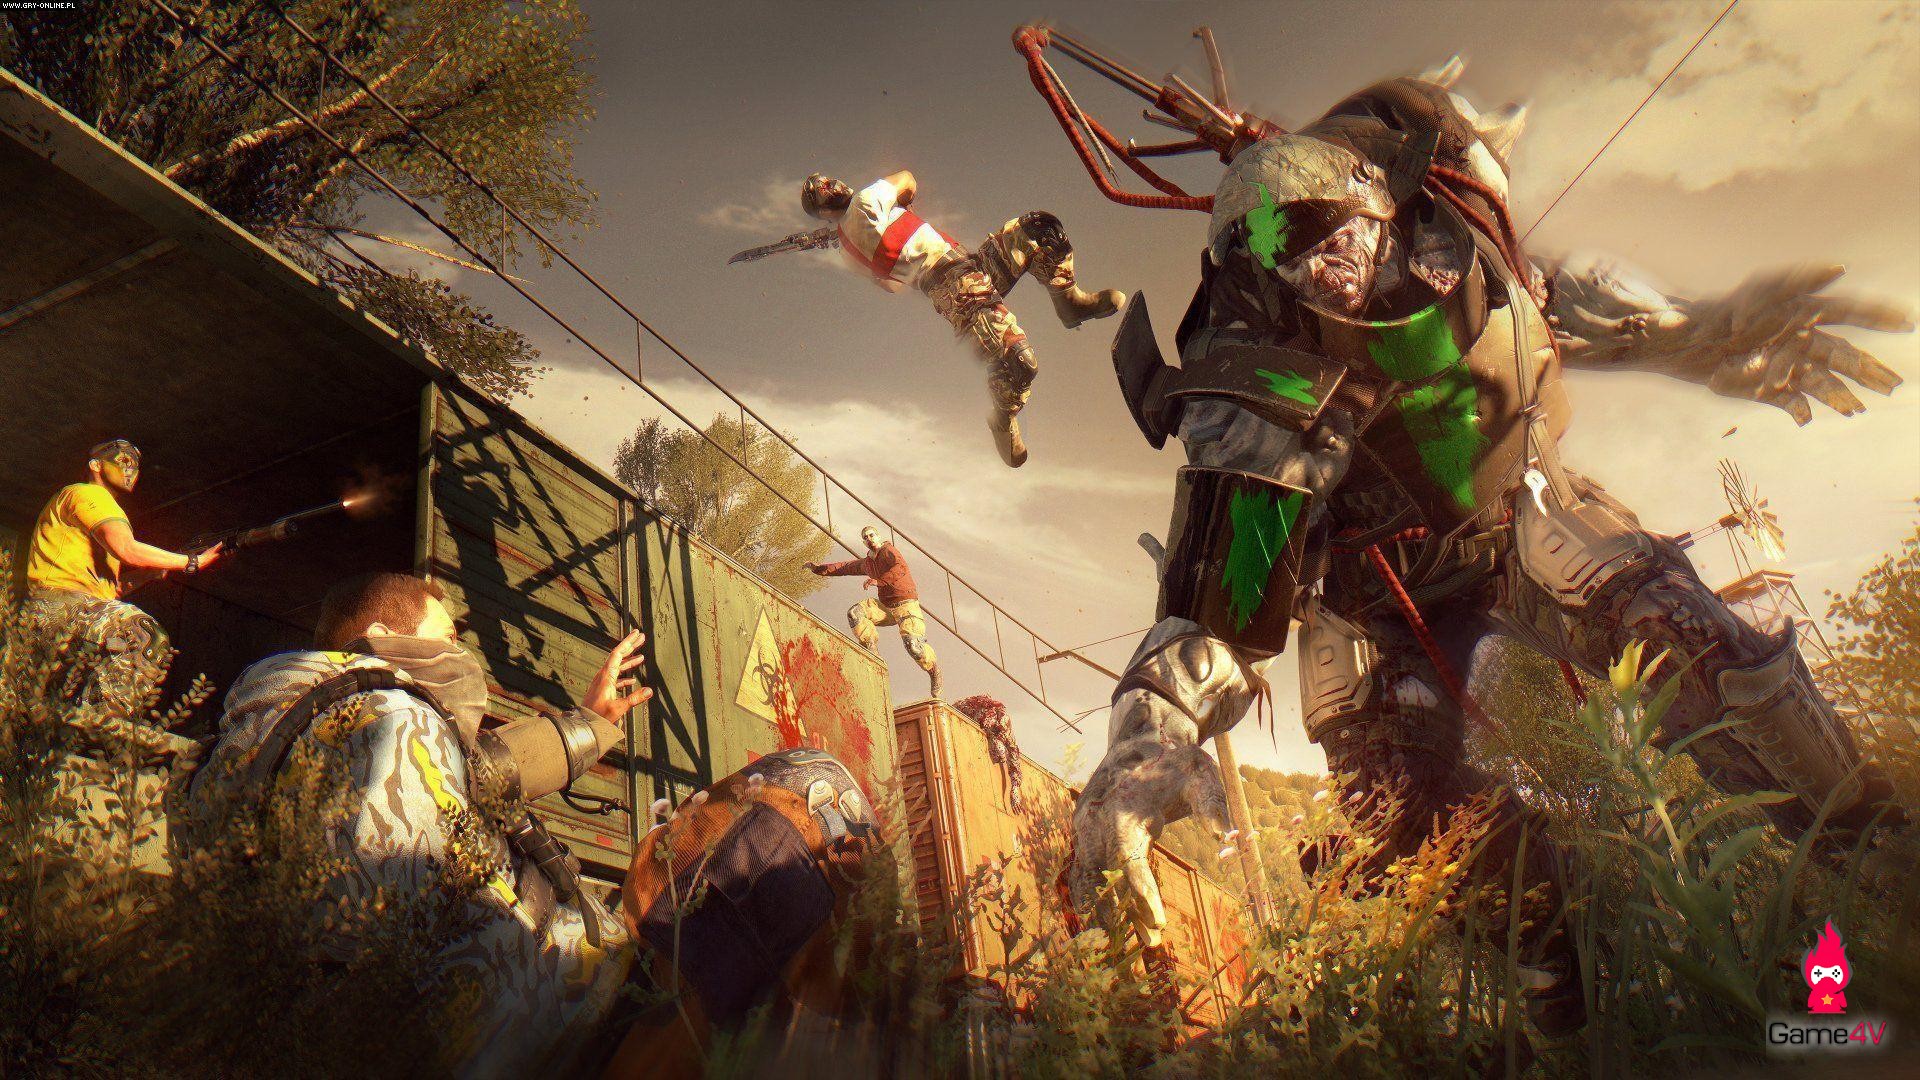 Dying Light sắp cập nhật chế độ Battle Royale, cho người chơi hợp tác hoặc phản bội lẫn nhau